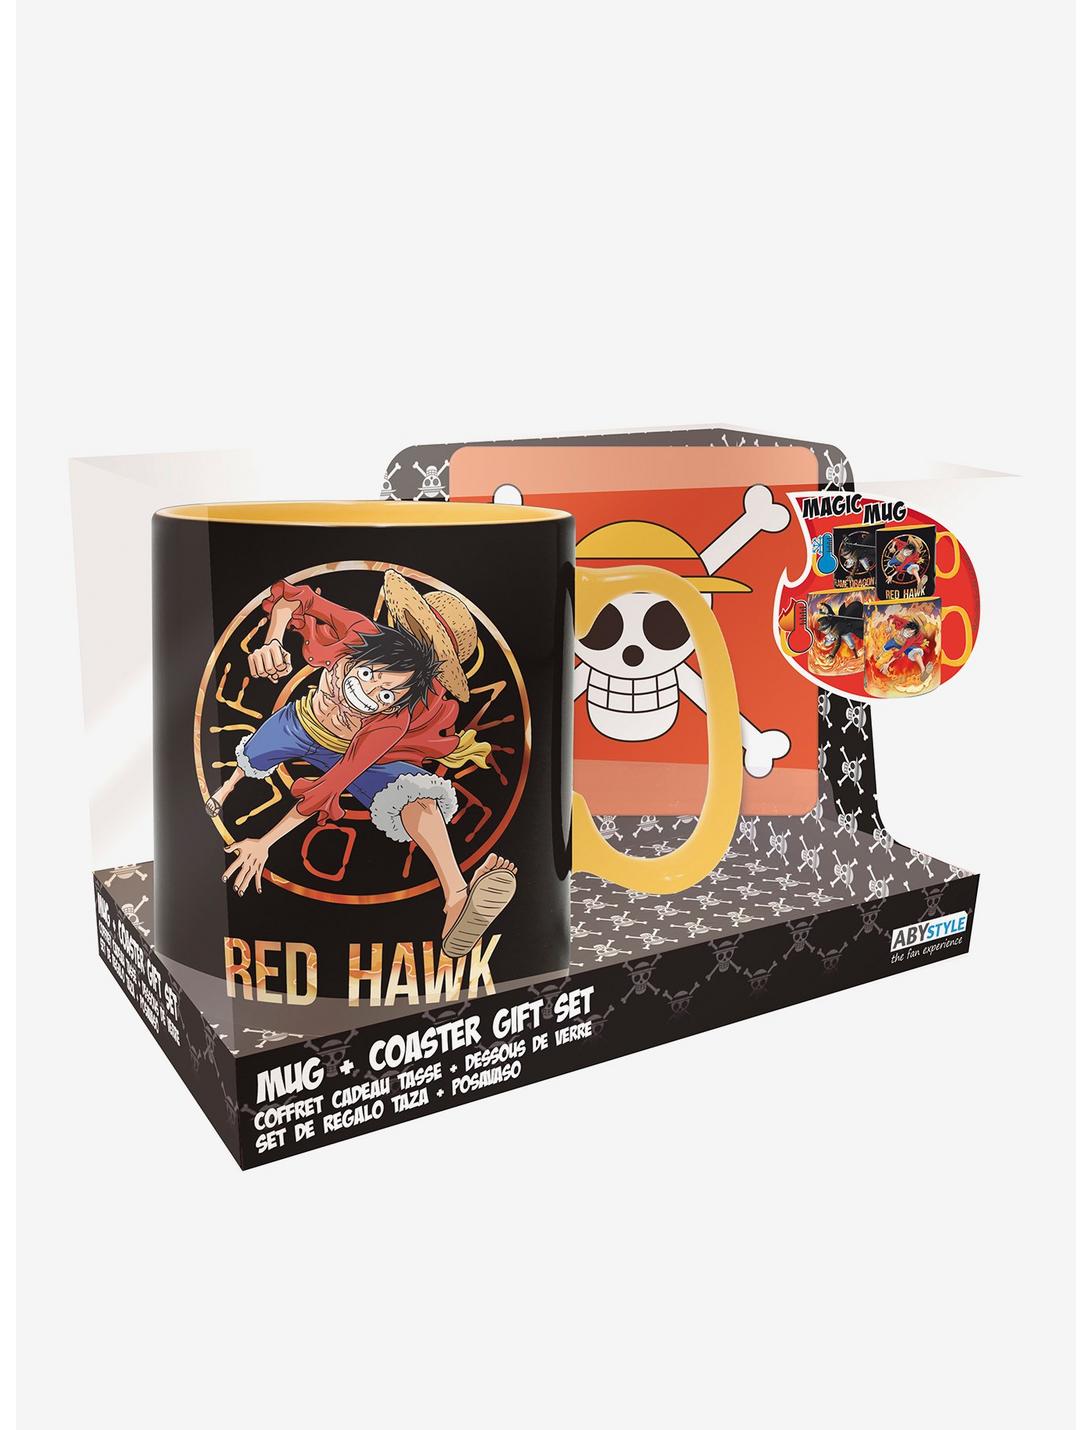 One Piece Luffy and Sabo Magic Mug and Coaster Gift Set, , hi-res